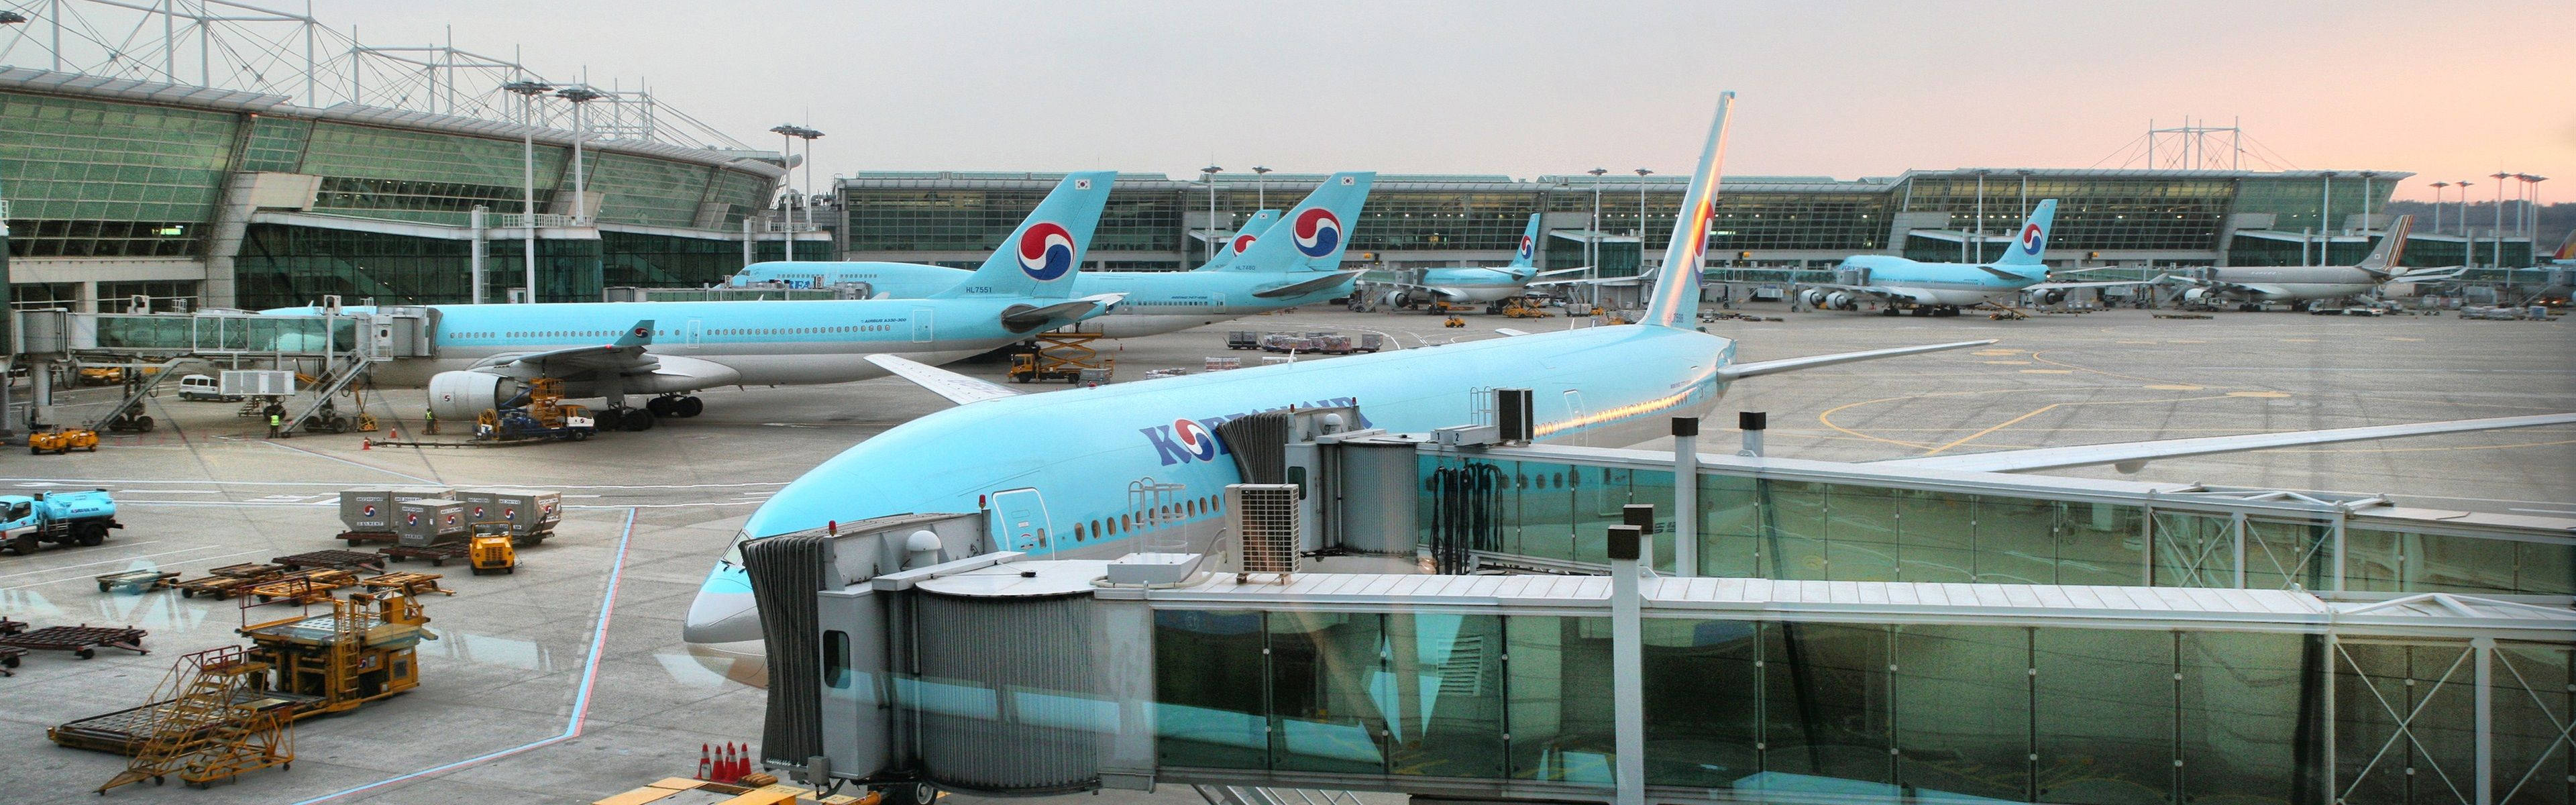 Korean Air Fleet Incheon International Airport Wallpaper